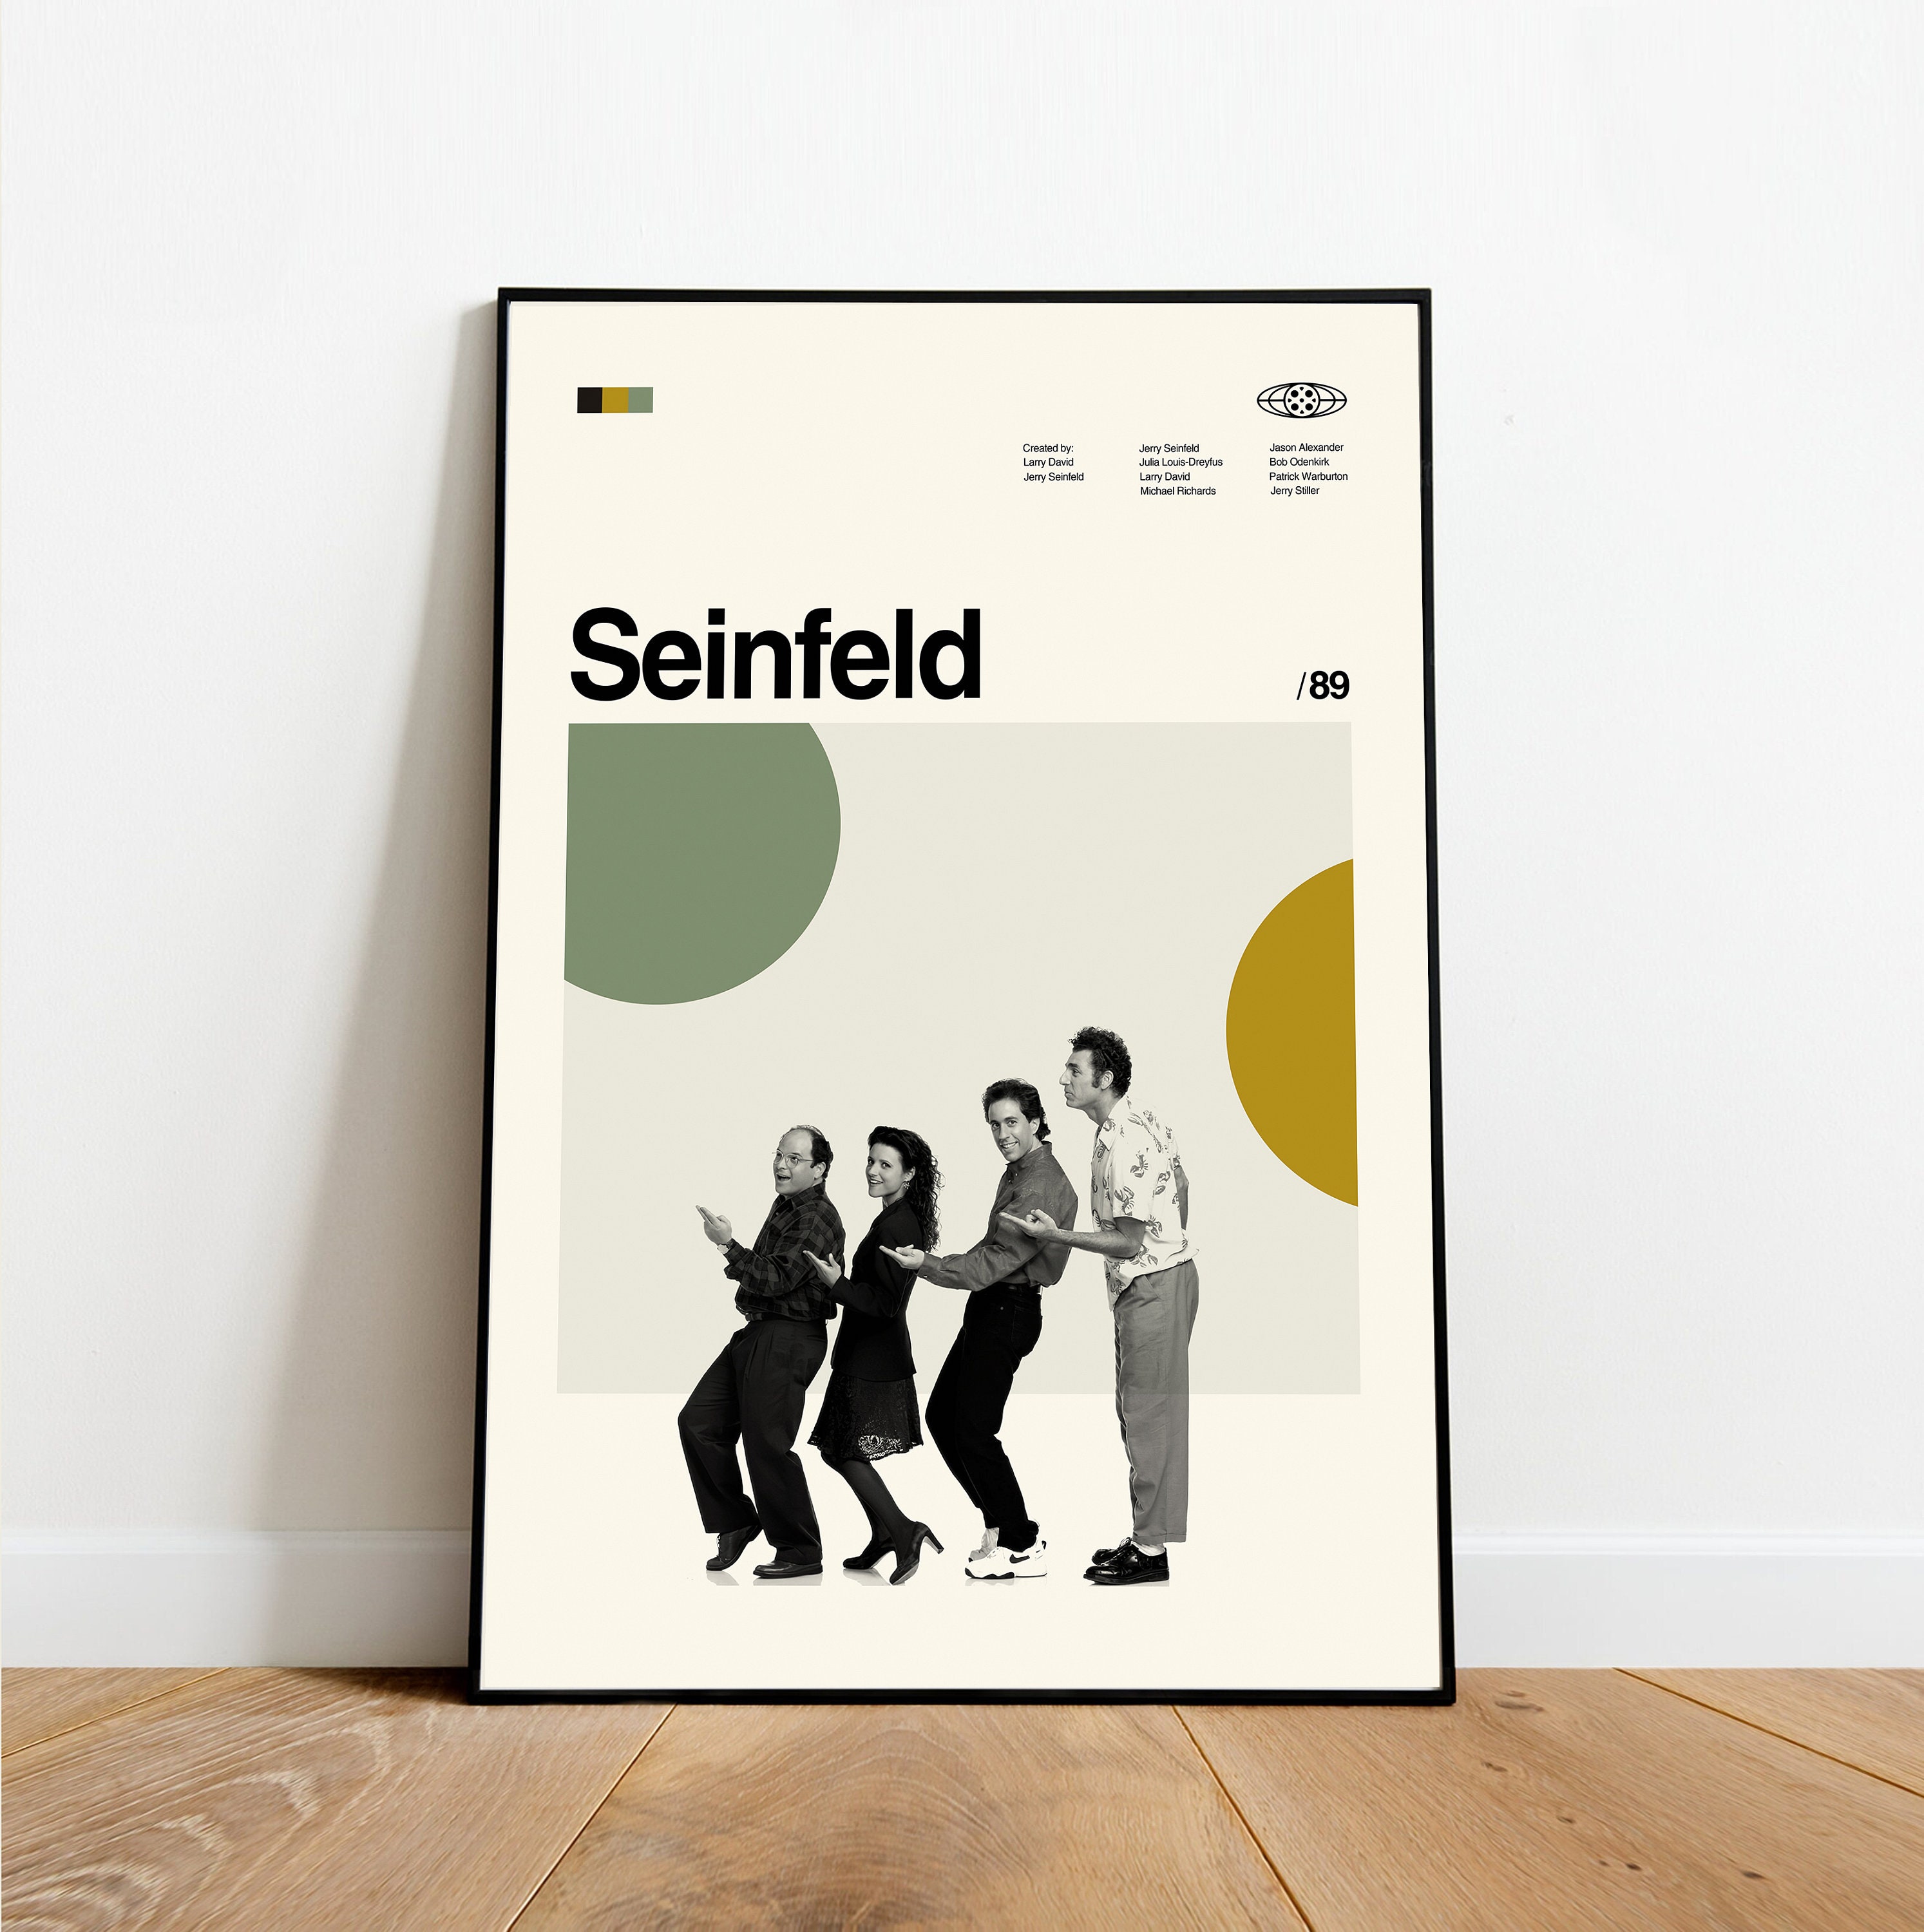 Discover Seinfeld Poster - Seinfeld Restaurant - Retro modern, Vintage inspired Poster